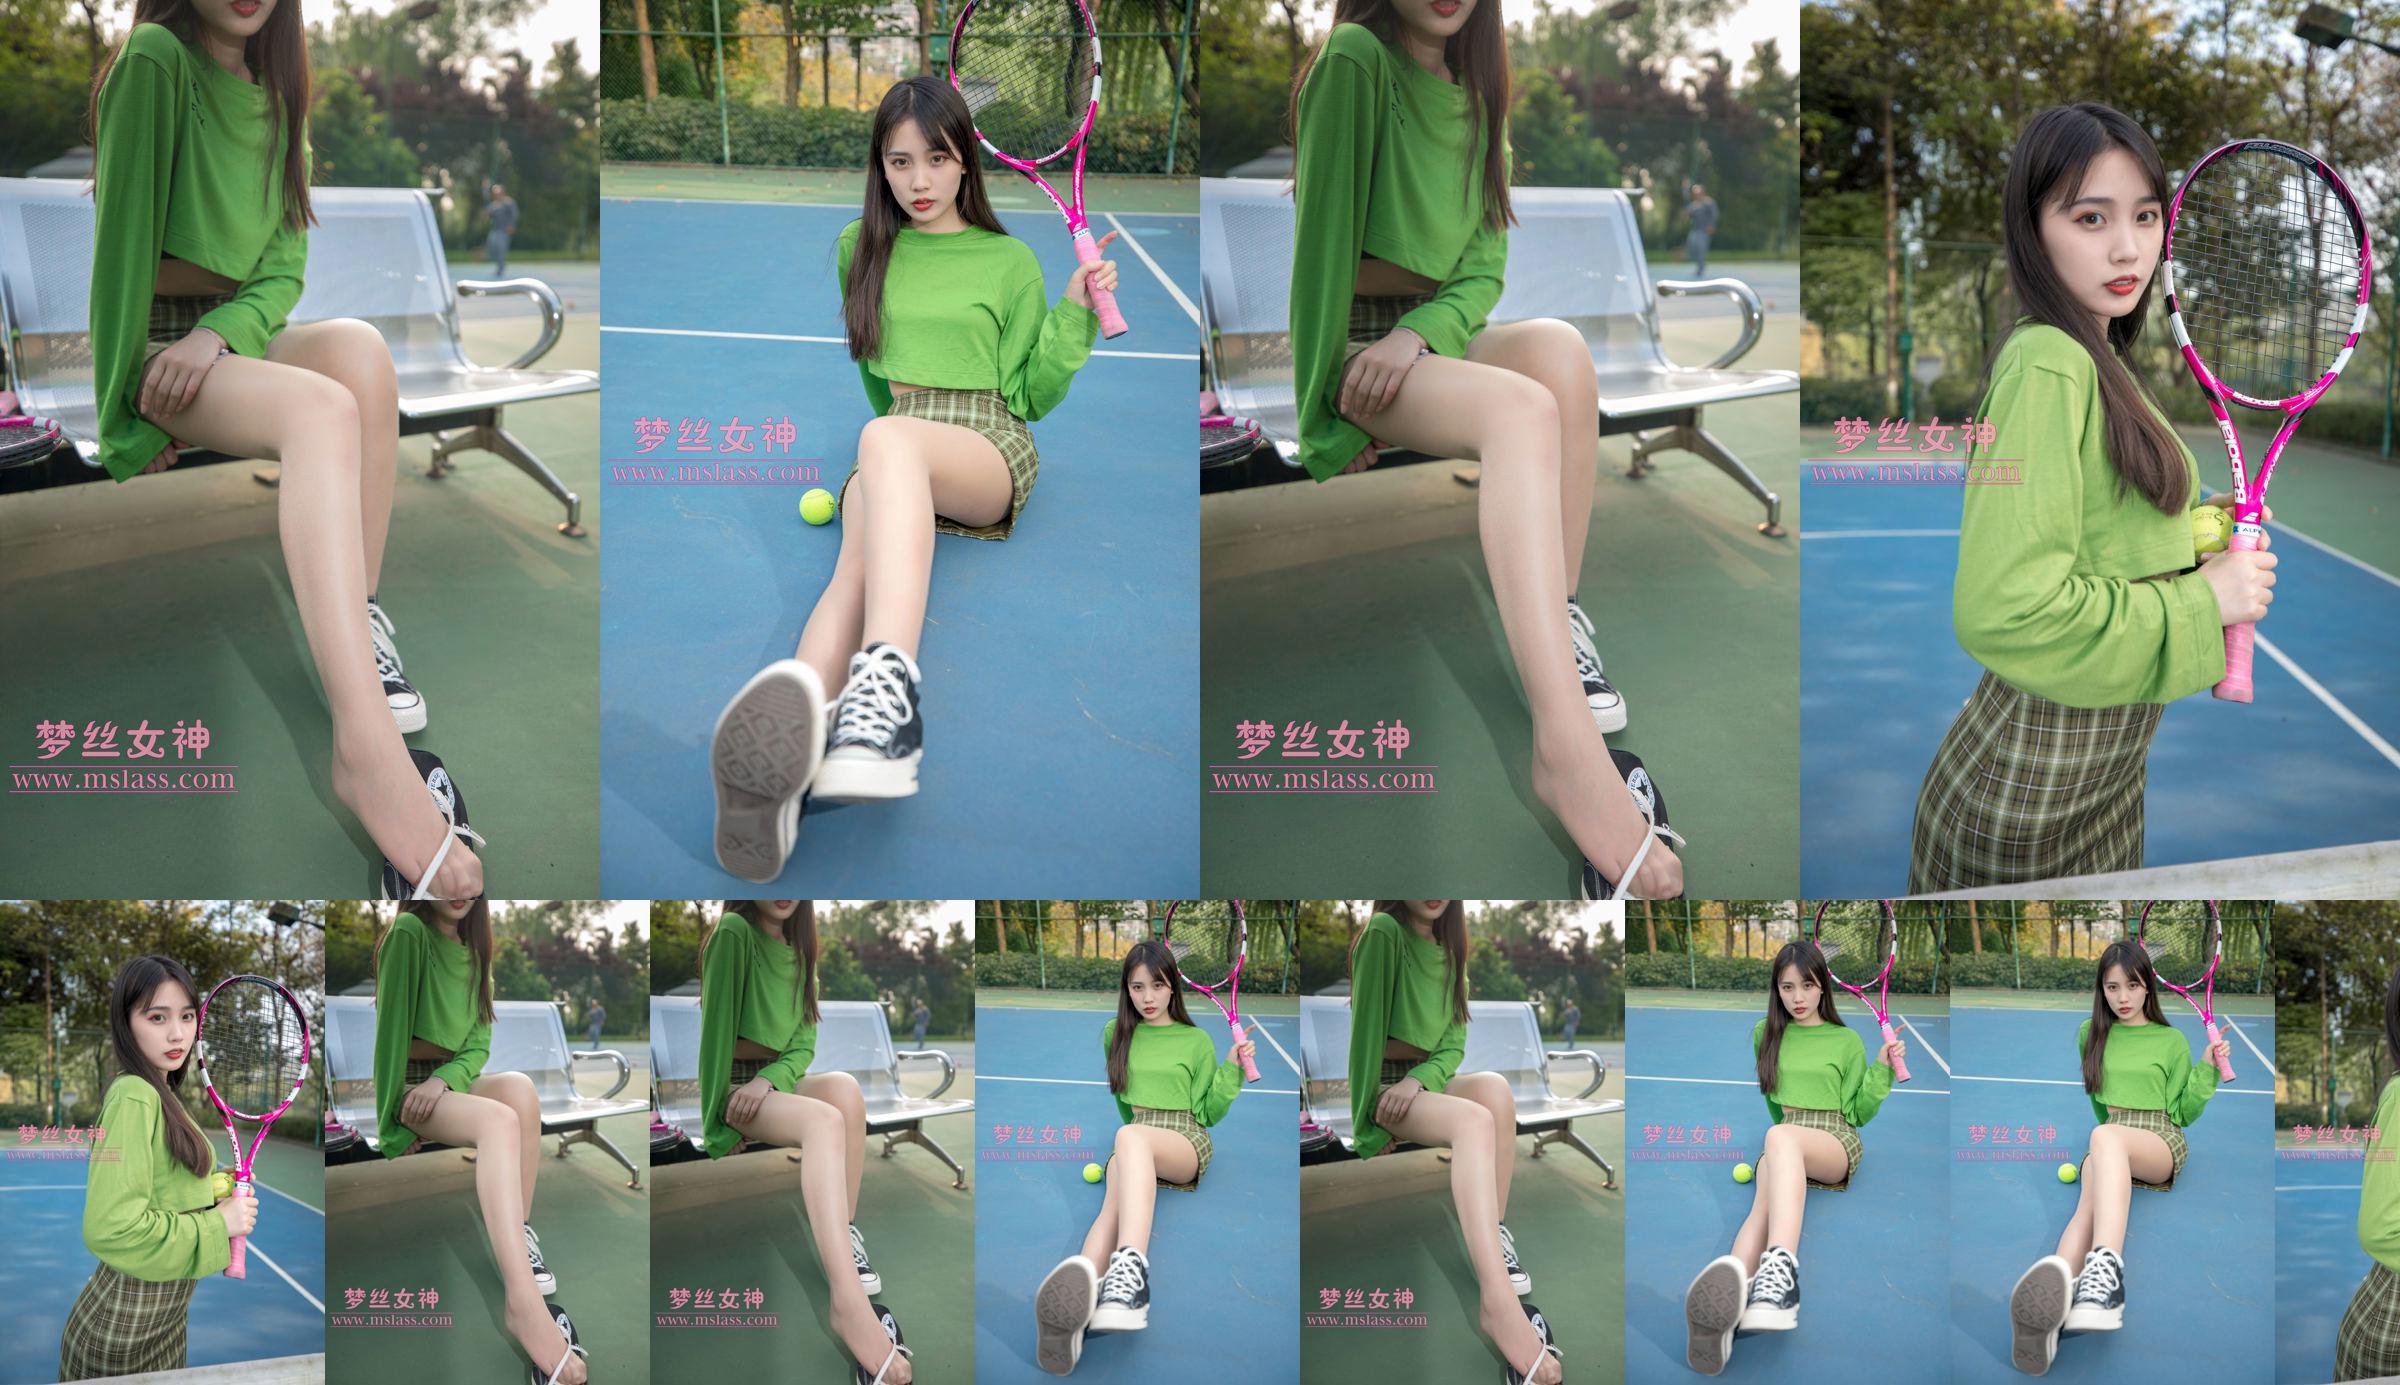 [꿈의 여신 MSLASS] Xiang Xuan 테니스 소녀 No.069bdf 페이지 1